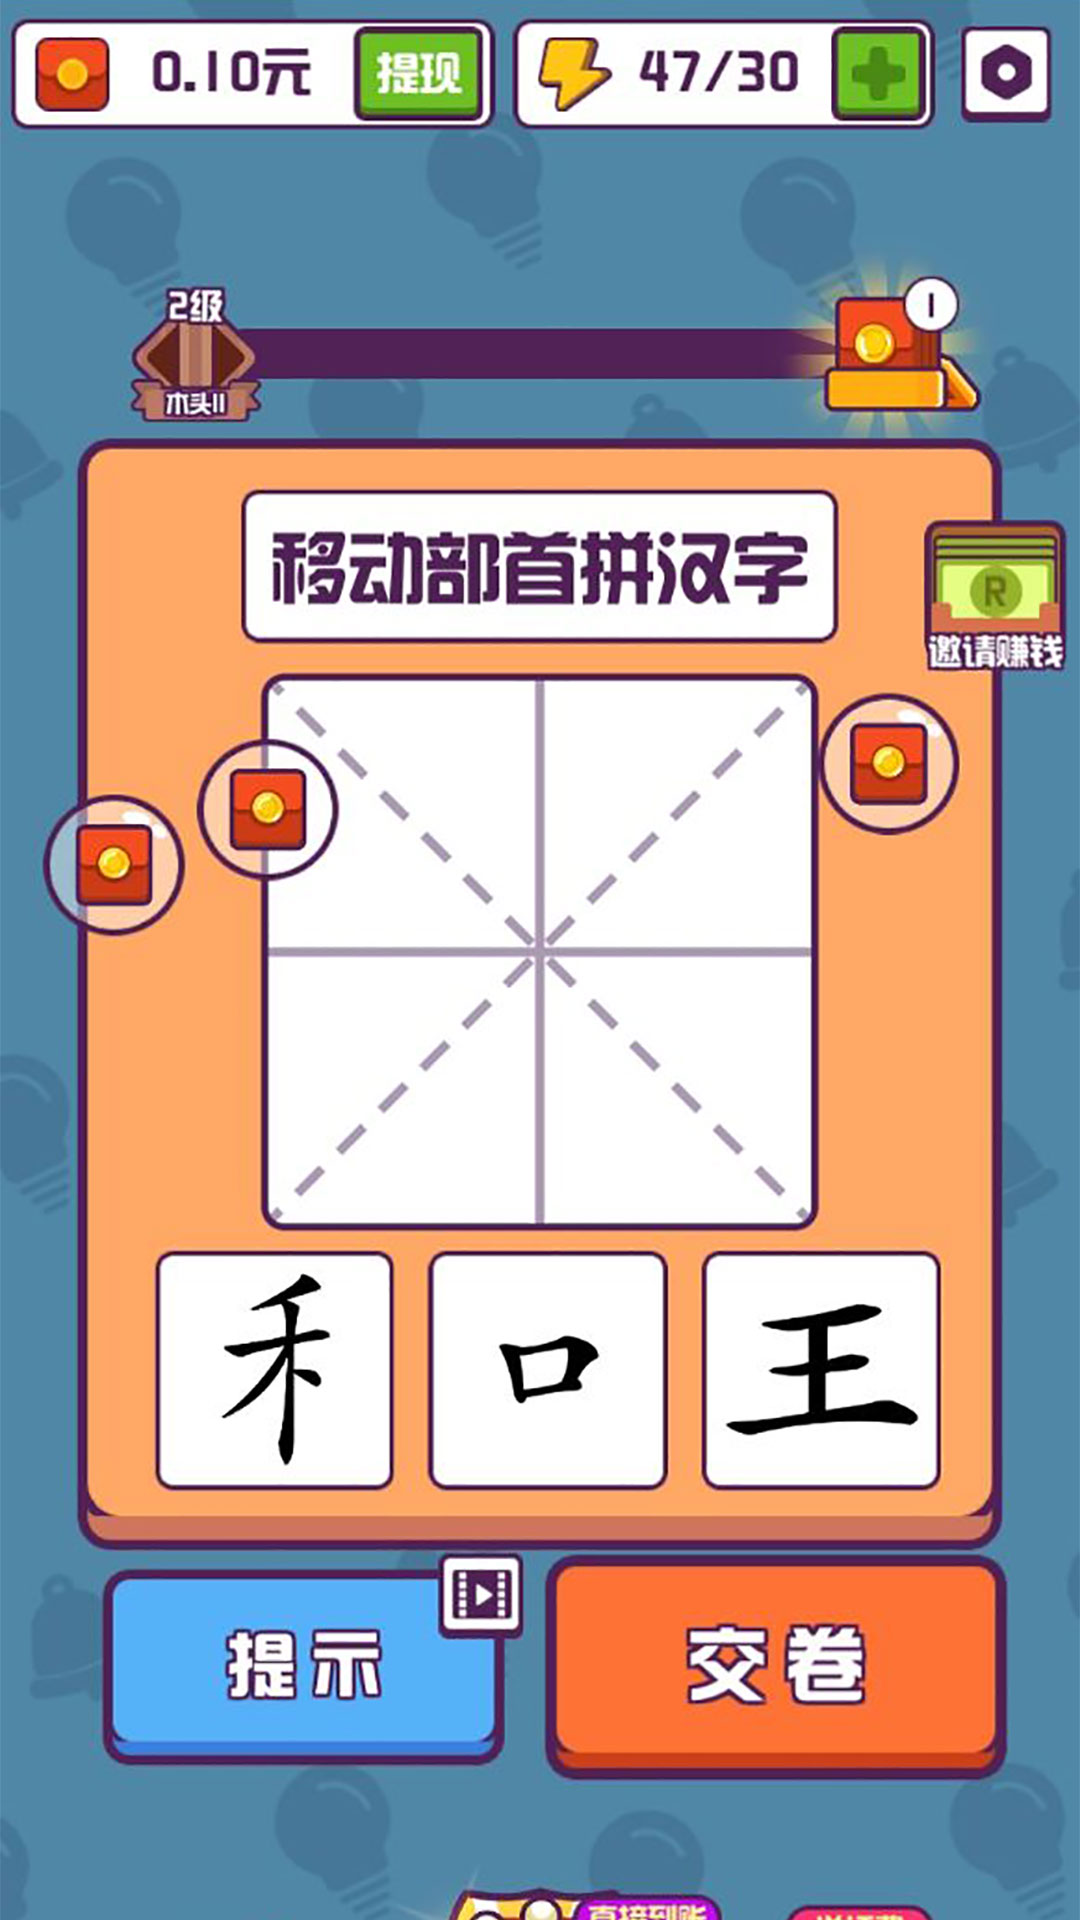 有趣的汉字游戏首充攻略,哪个版本送首充